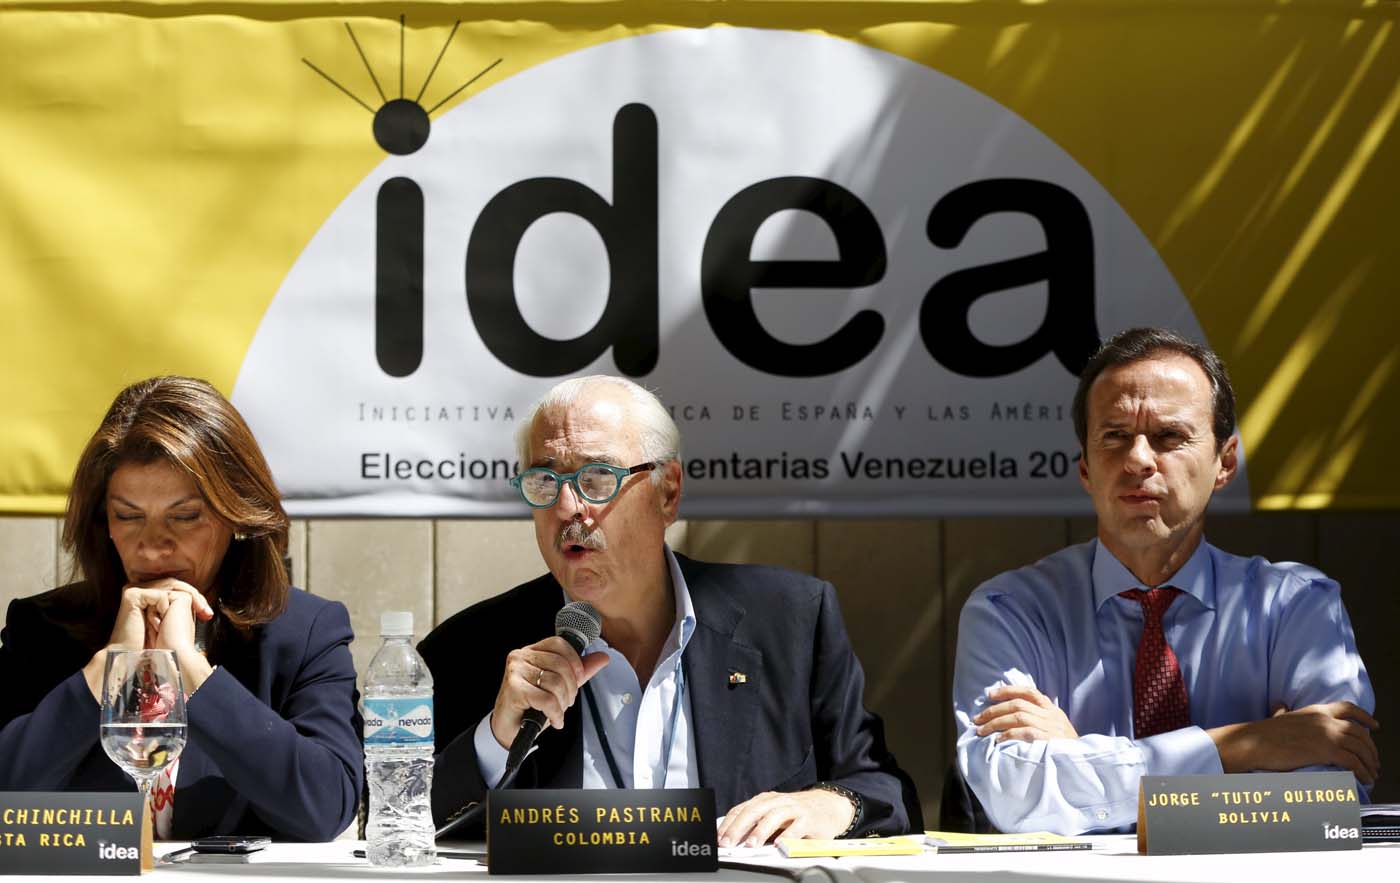 Grupo Idea condena a los Estados criminales de Cuba, Venezuela y Nicaragua (Declaración)